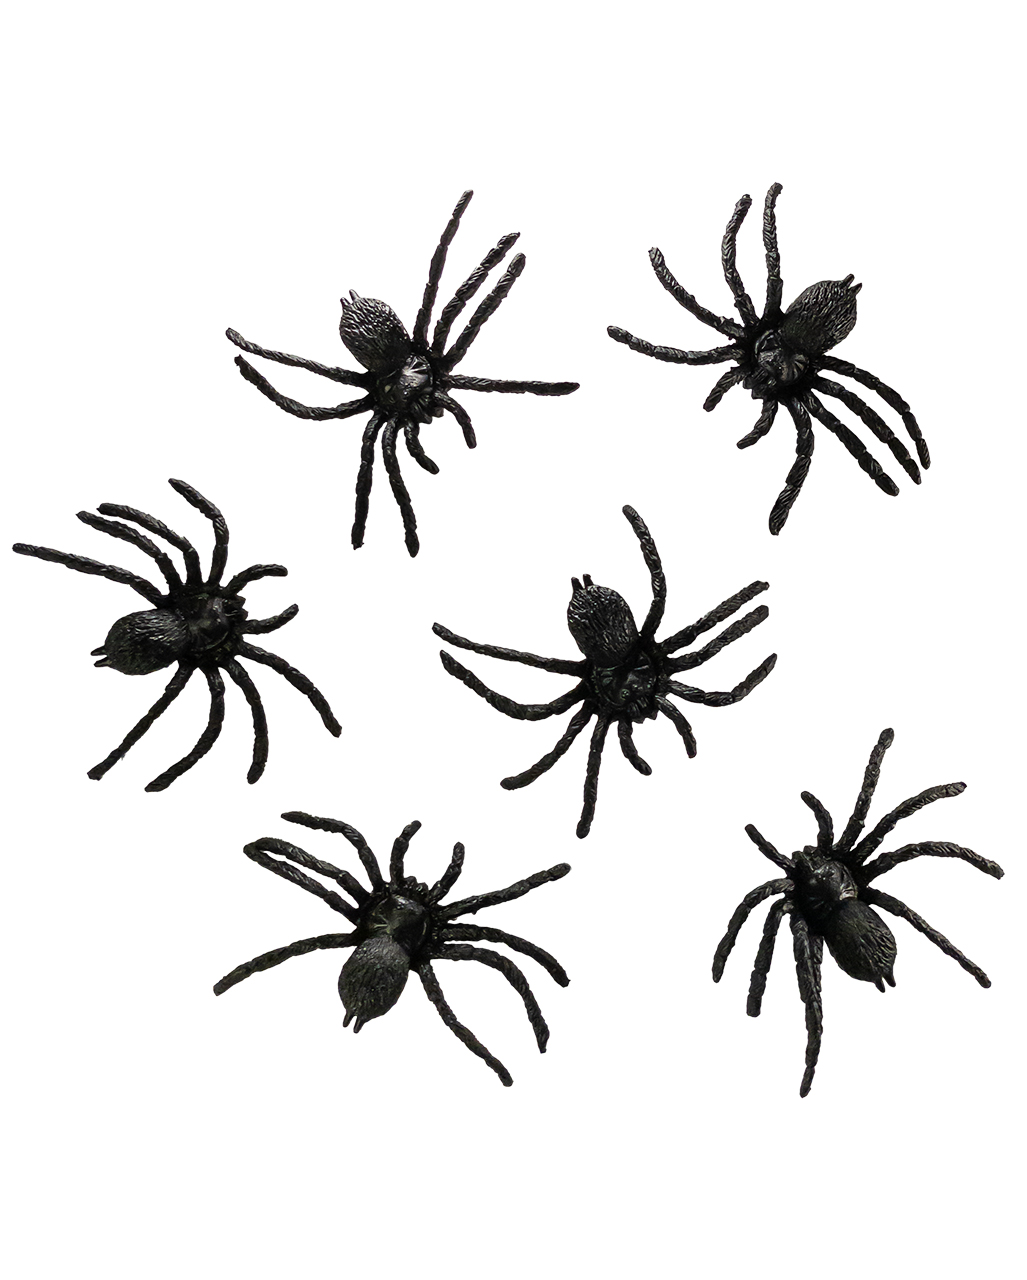 Tiefschwarze Spinnen 8x7cm im 6er Set Halloween Deko von Horror-Shop.com